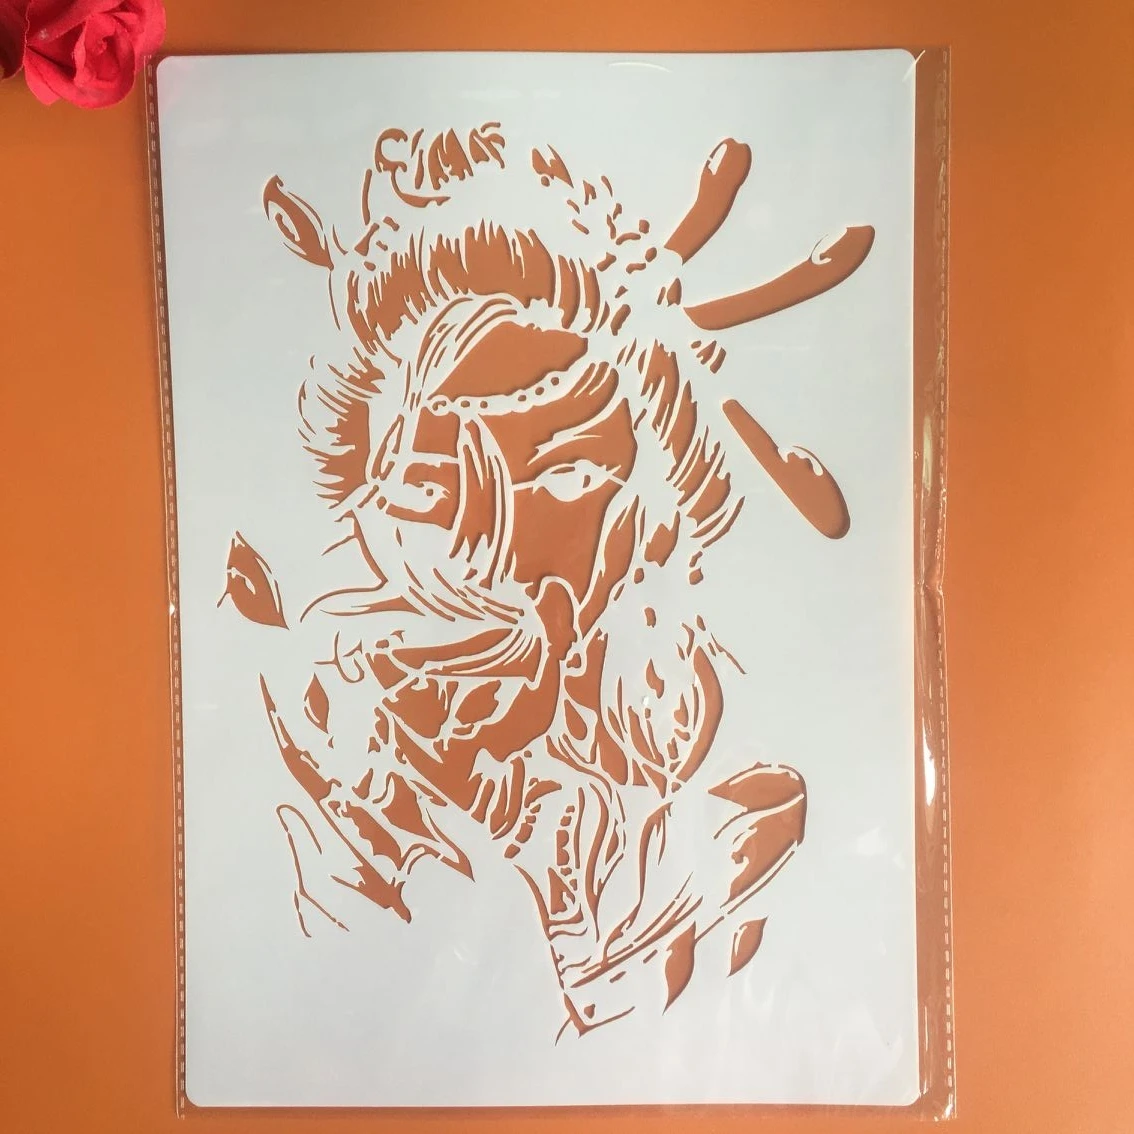 A4 29*21 см женские warriorl DIY Трафареты настенная живопись раскраска для скрапбукинга рельефная декоративная альбомная бумага визитная карточка